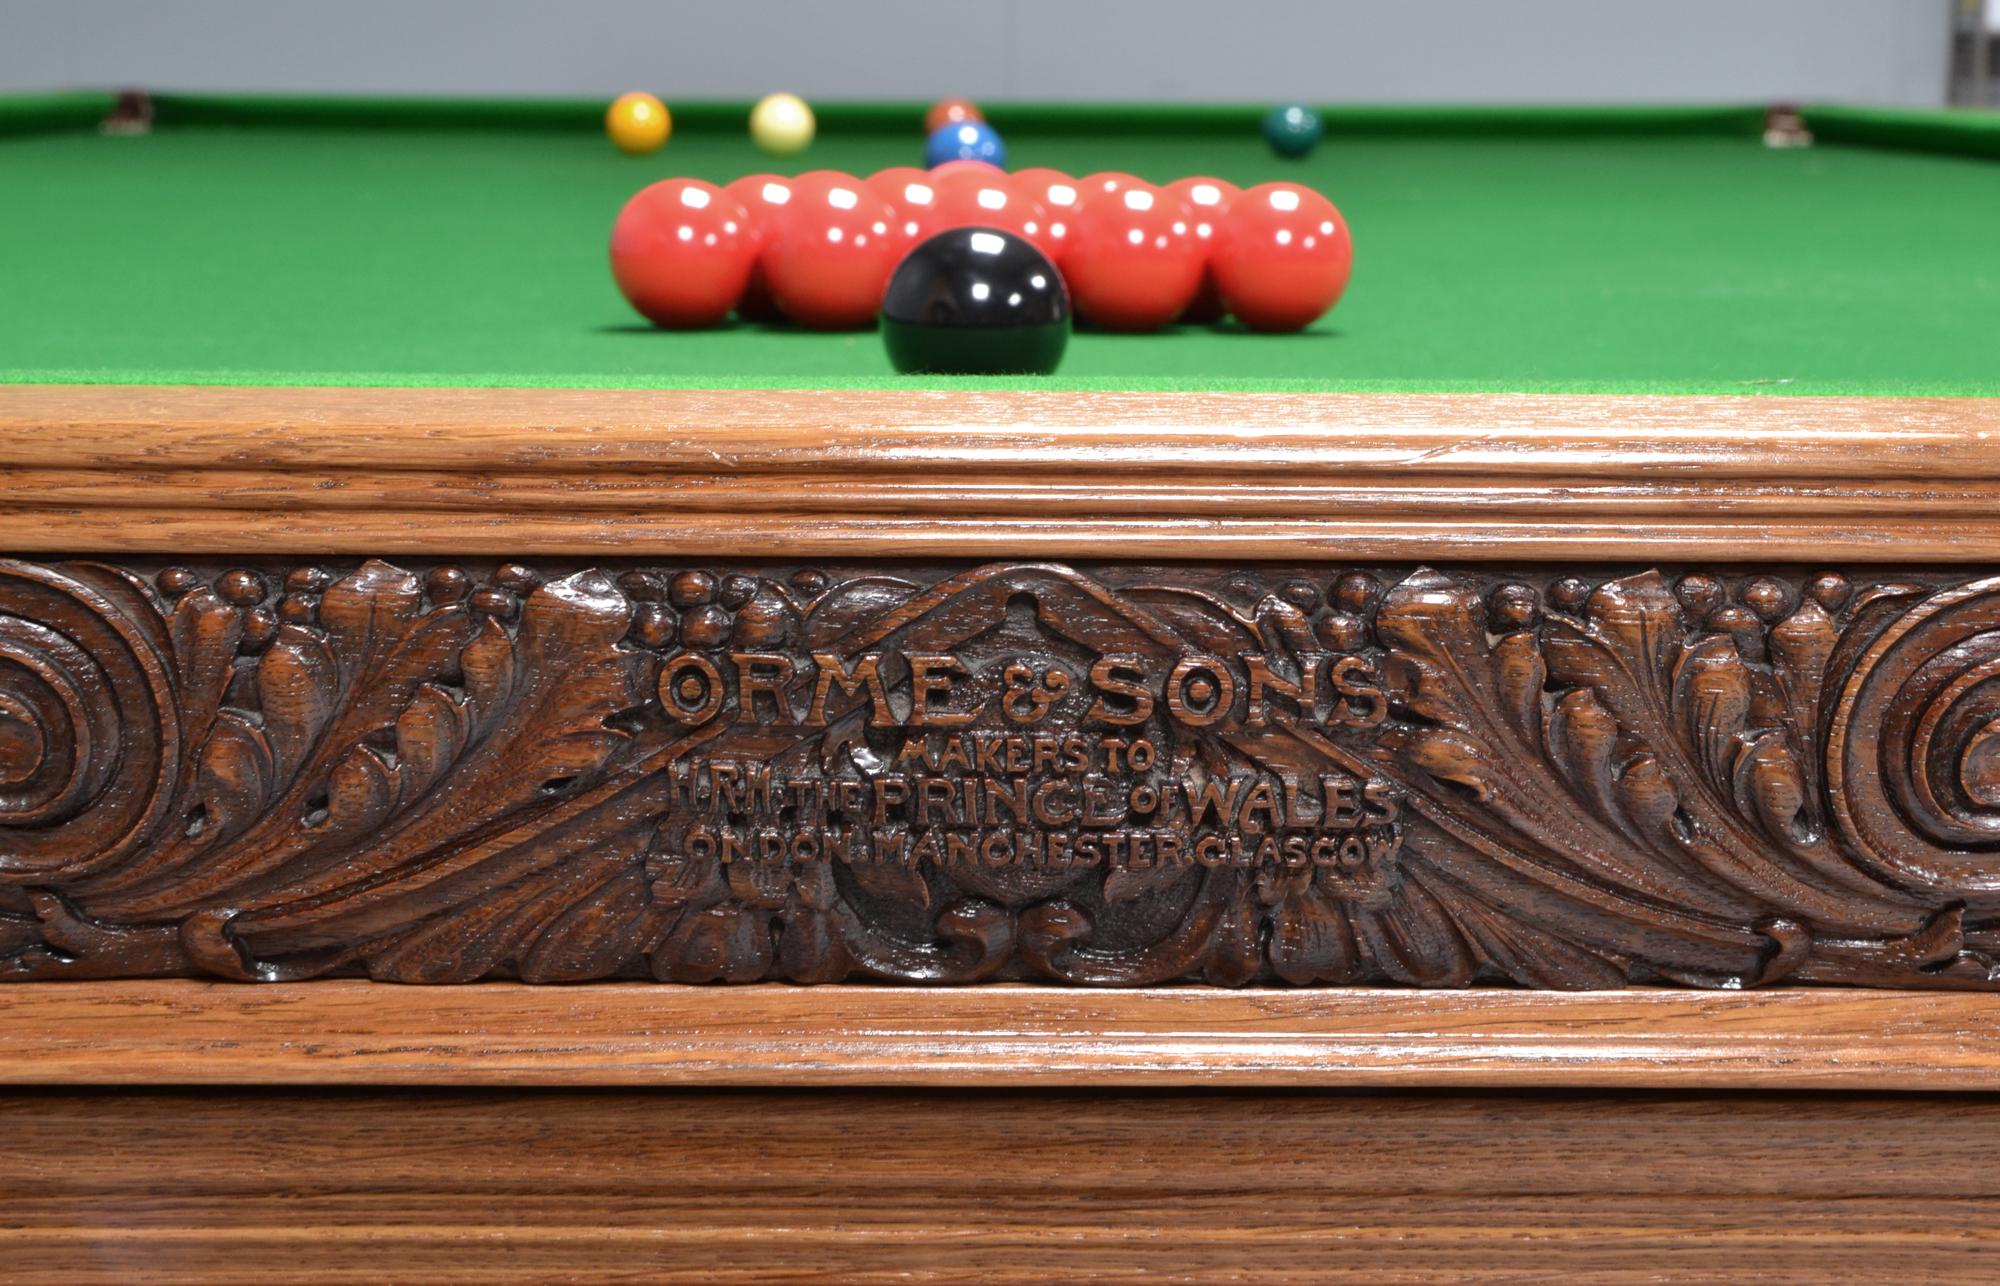 Eine wunderbare Ausstellung Qualität Englisch Billard oder Snooker Tisch von Orme und Söhne von Manchester und London.

Wahrscheinlich der beste Billardtisch auf dem Markt, hervorragende Qualität mit großer Präsenz!

Hergestellt aus massiver Eiche